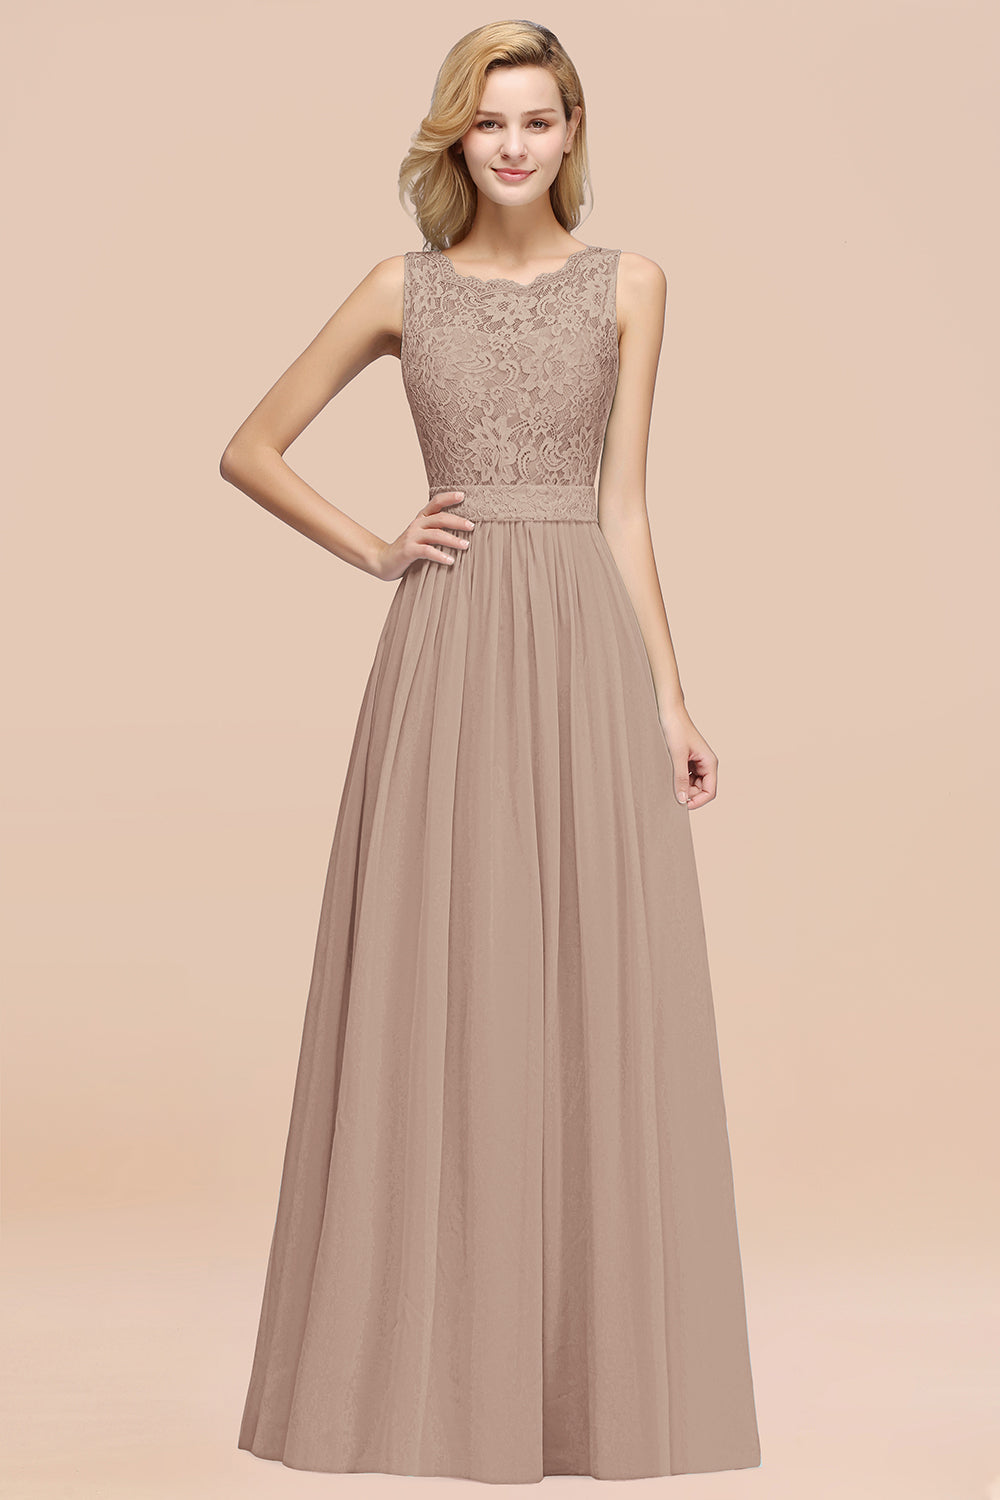 A-Line Lace Scalloped Chiffon Long Bridesmaid Dress with Ruffles-27Dress